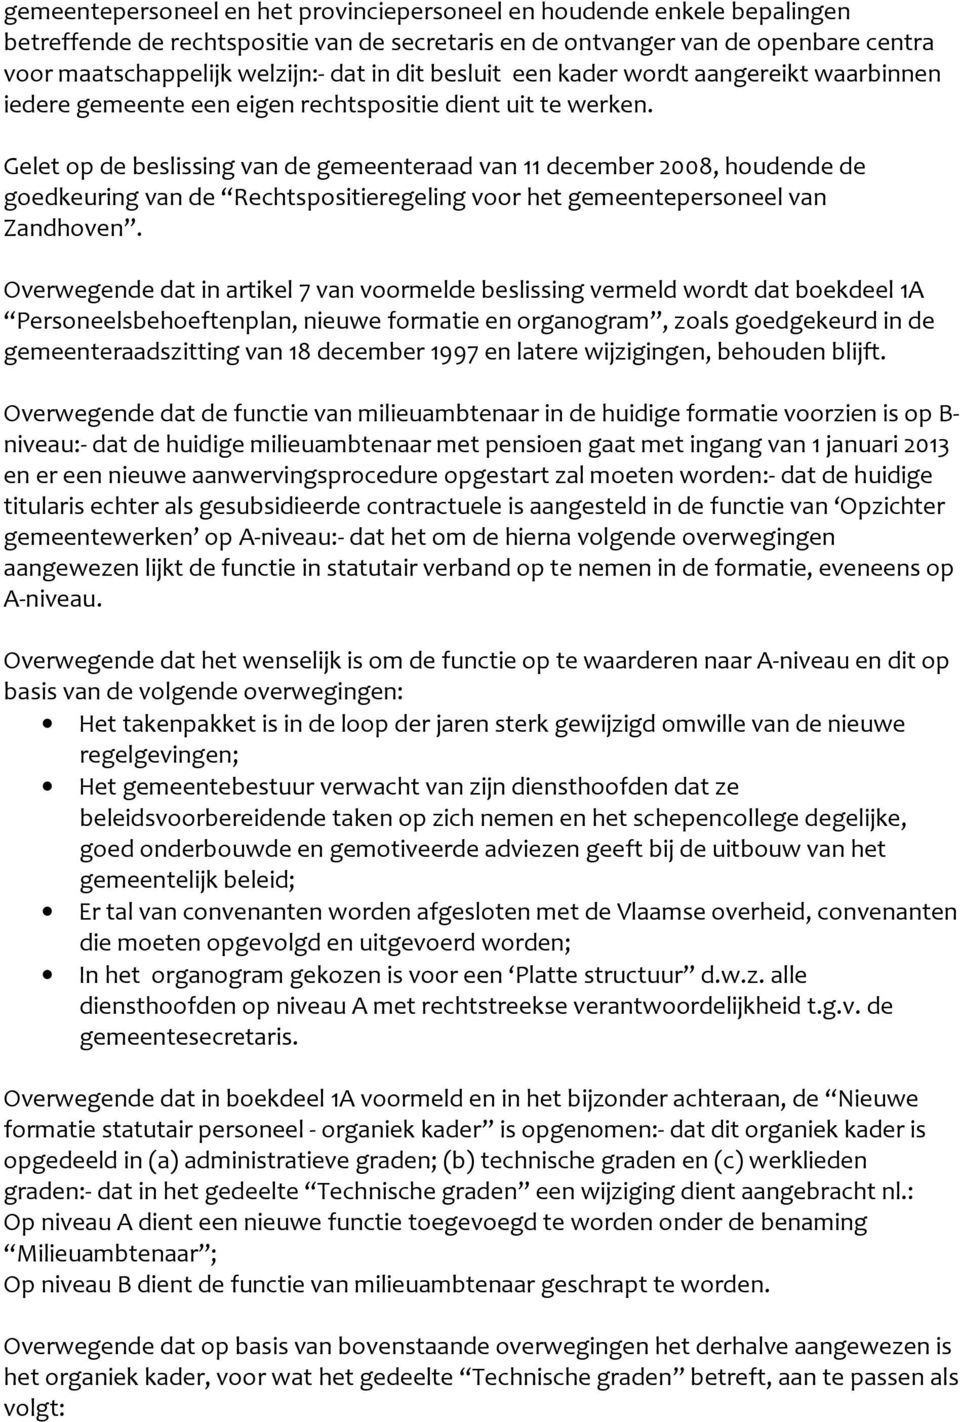 Gelet op de beslissing van de gemeenteraad van december 2008, houdende de goedkeuring van de Rechtspositieregeling voor het gemeentepersoneel van Zandhoven.